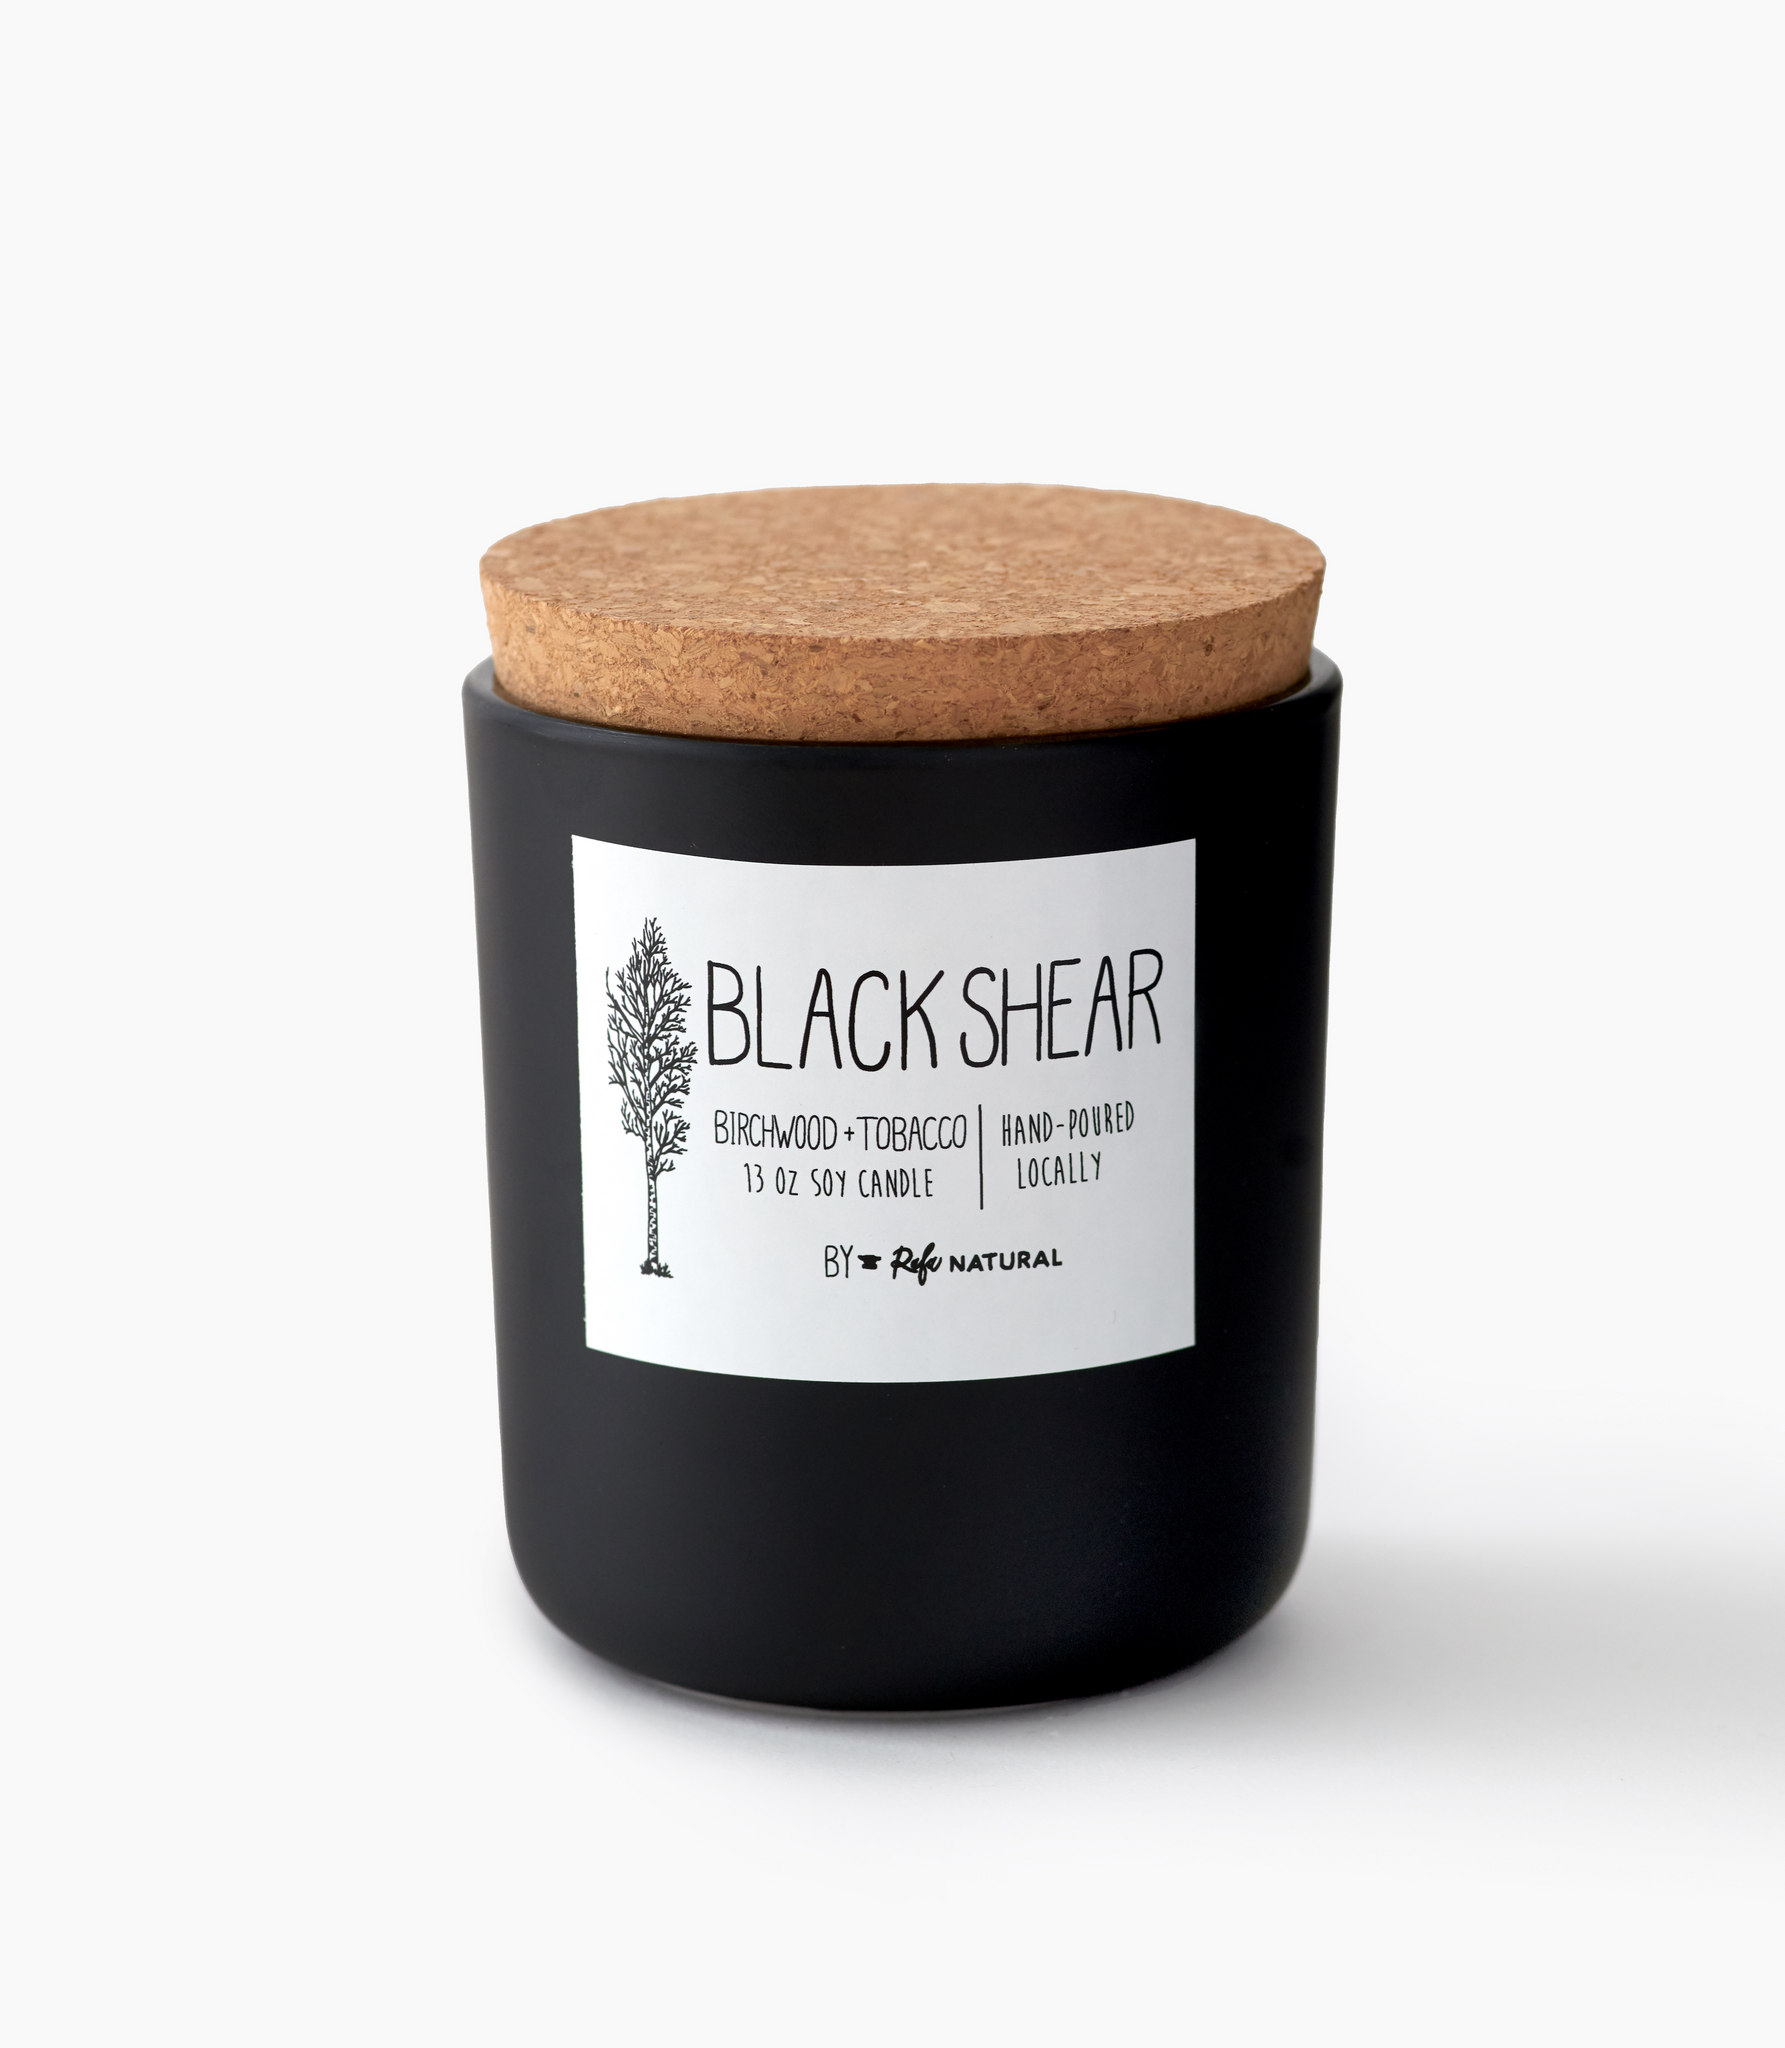 Blackshear 50Hr Candle by Rafa Natural